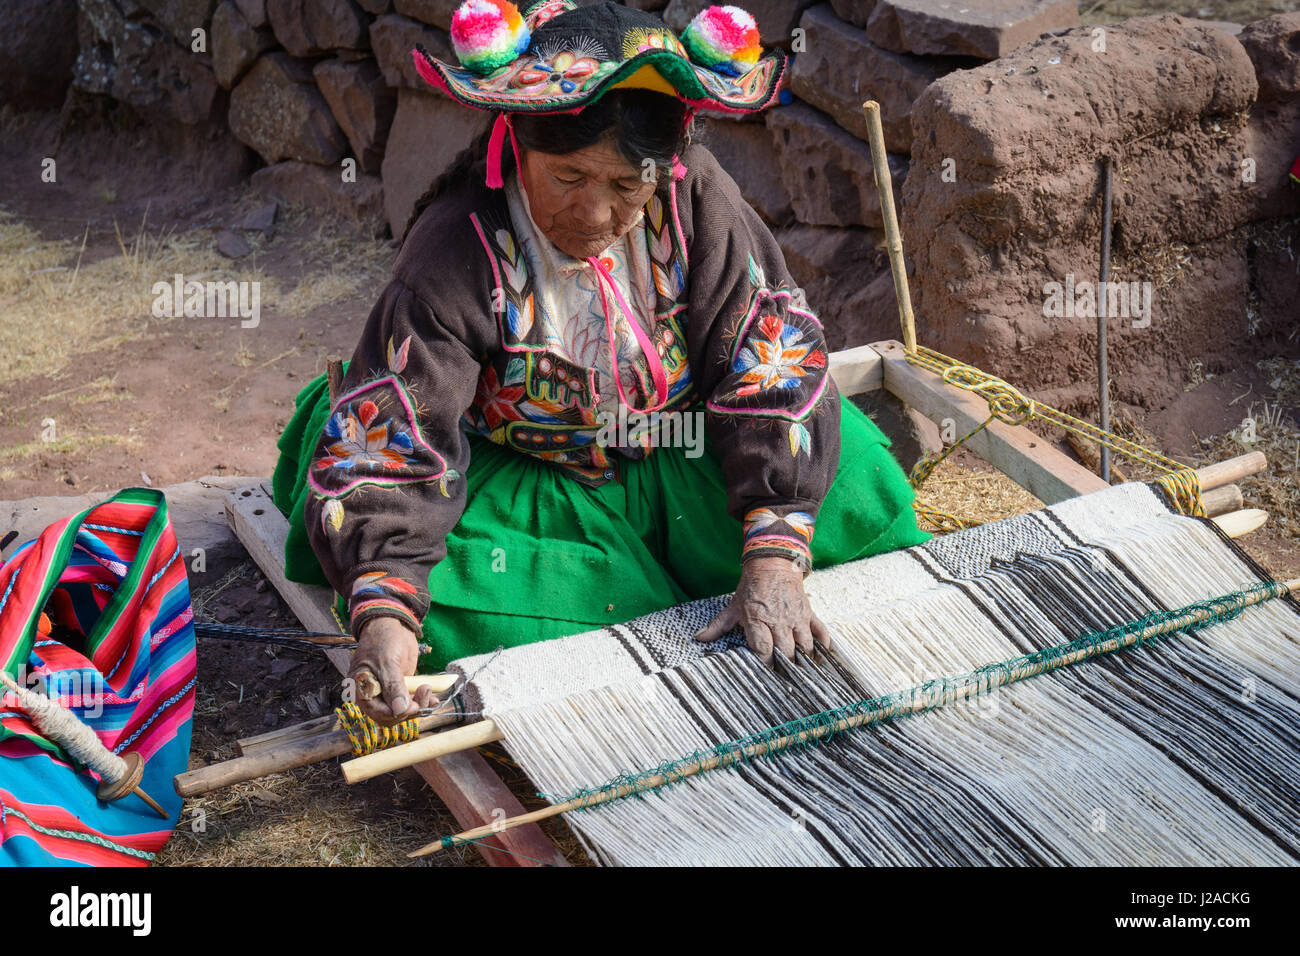 Le Pérou, Puno, de l'artisanat (tissage) Banque D'Images